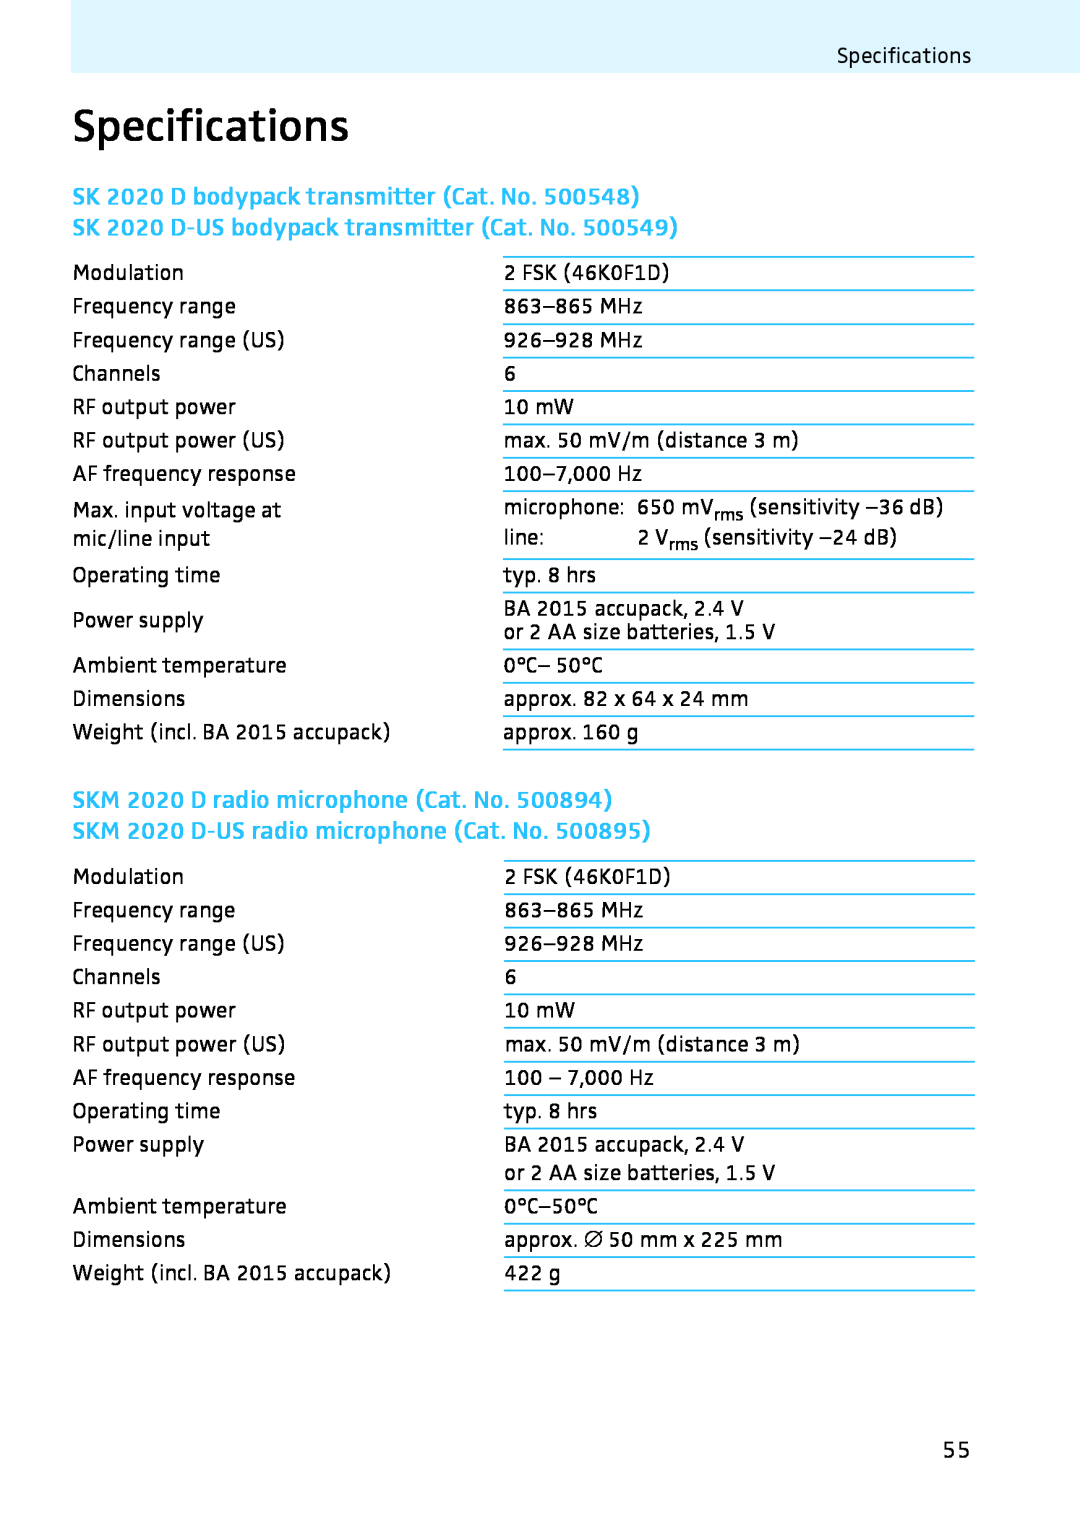 Sennheiser Specifications, SK 2020 D bodypack transmitter Cat. No, SK 2020 D-USbodypack transmitter Cat. No 